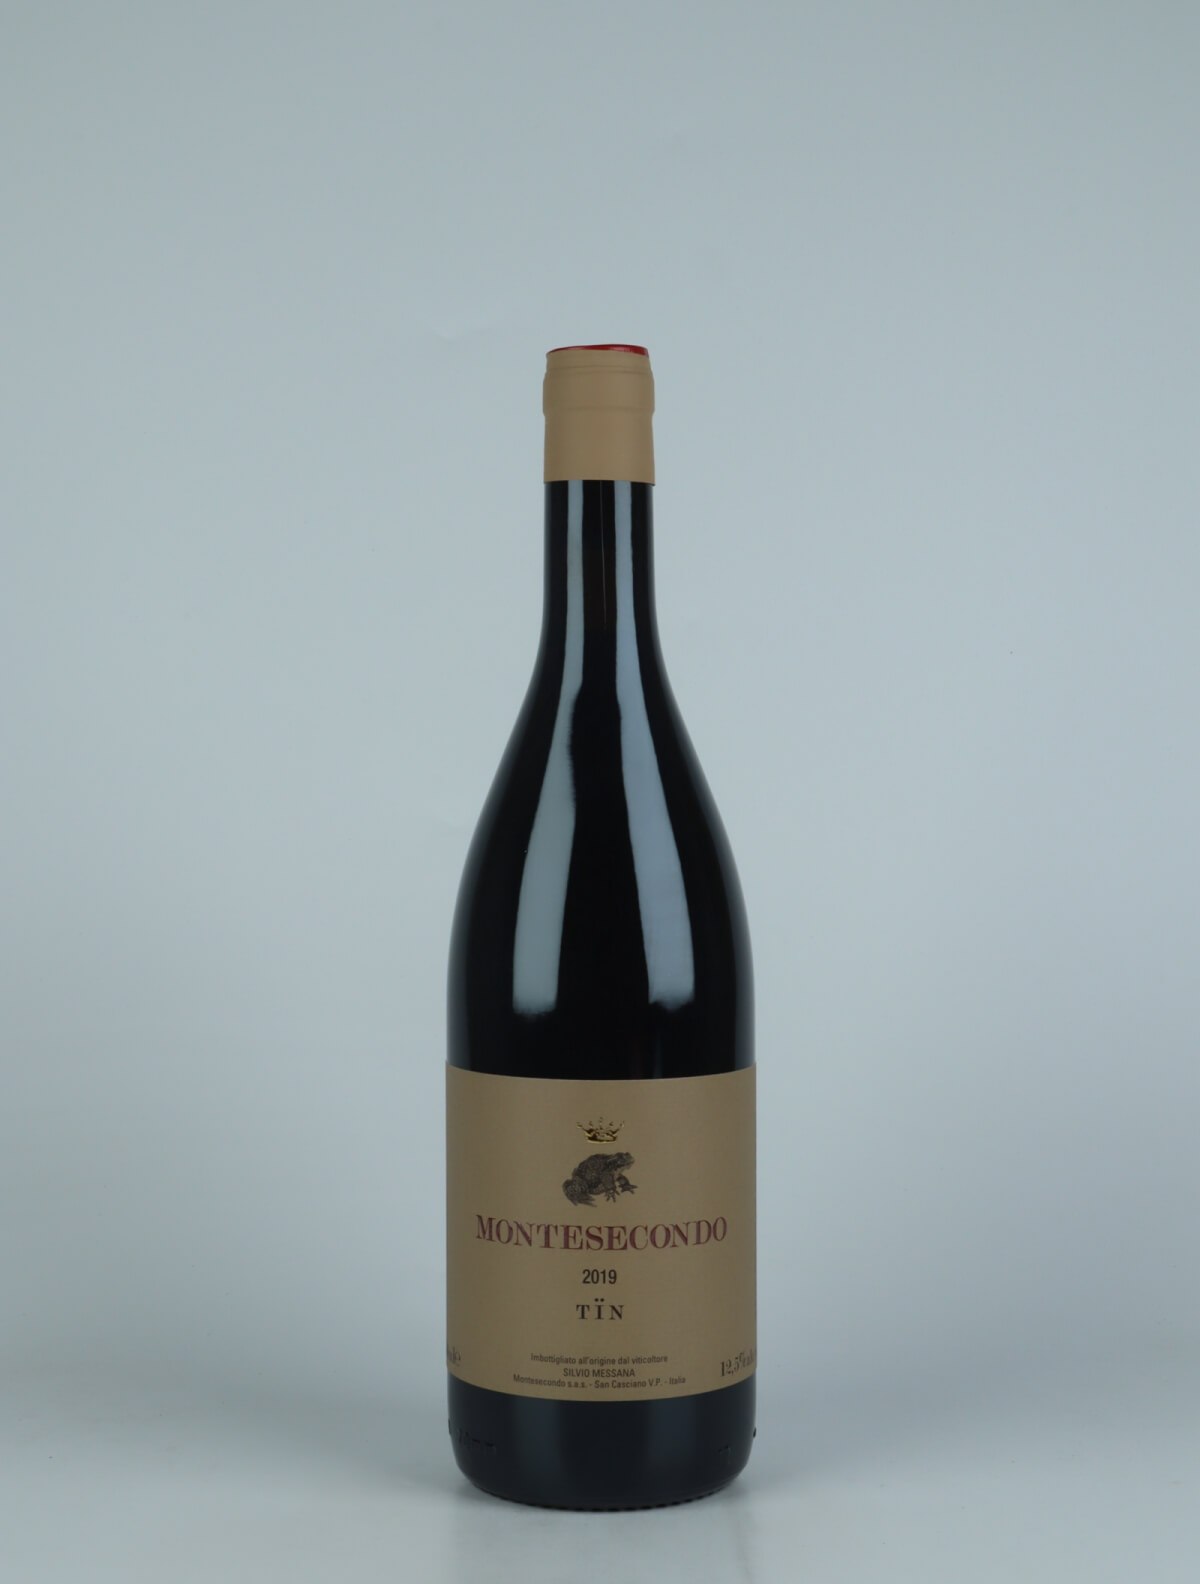 En flaske 2019 Tïn - Sangiovese Rødvin fra Montesecondo, Toscana i Italien